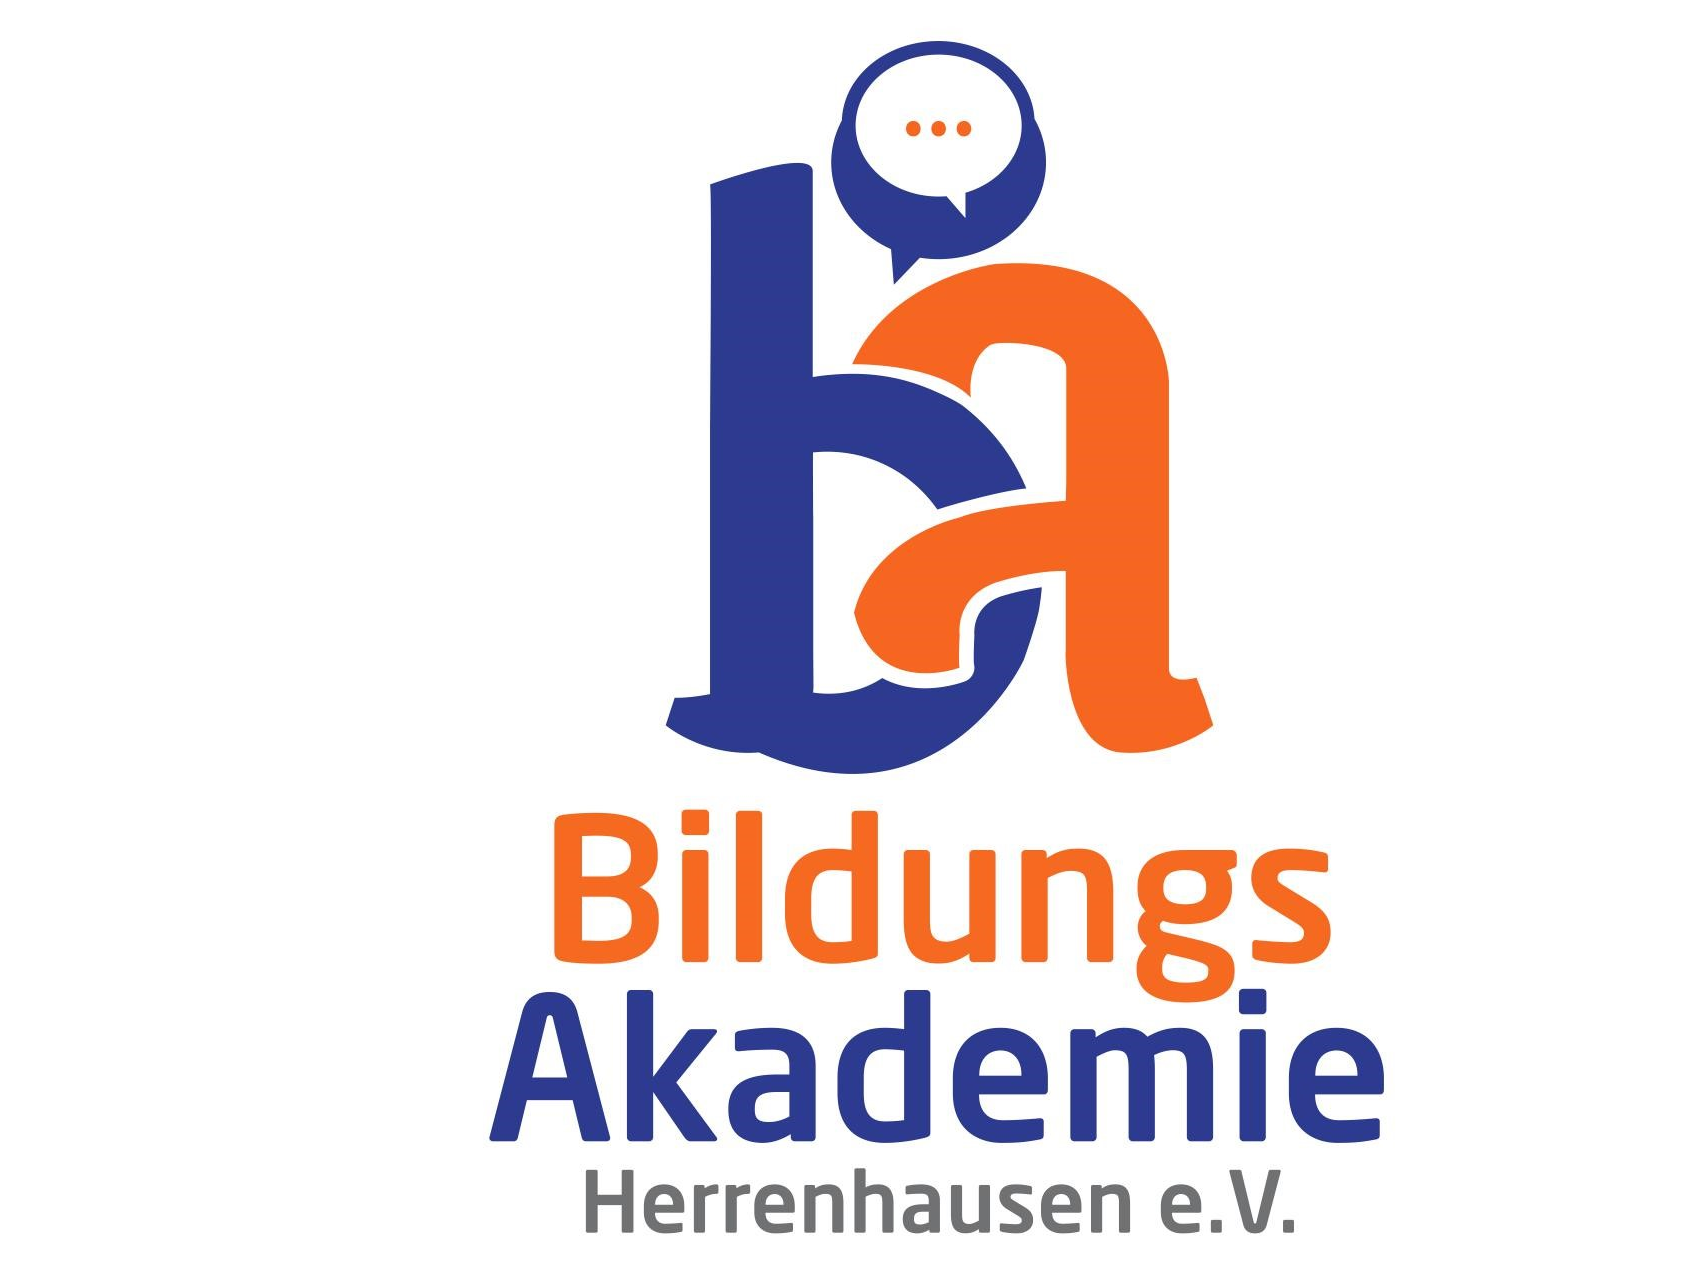 Bildungs Akademie Herrenhausen e.V., Georgstraße 11 in Hannover